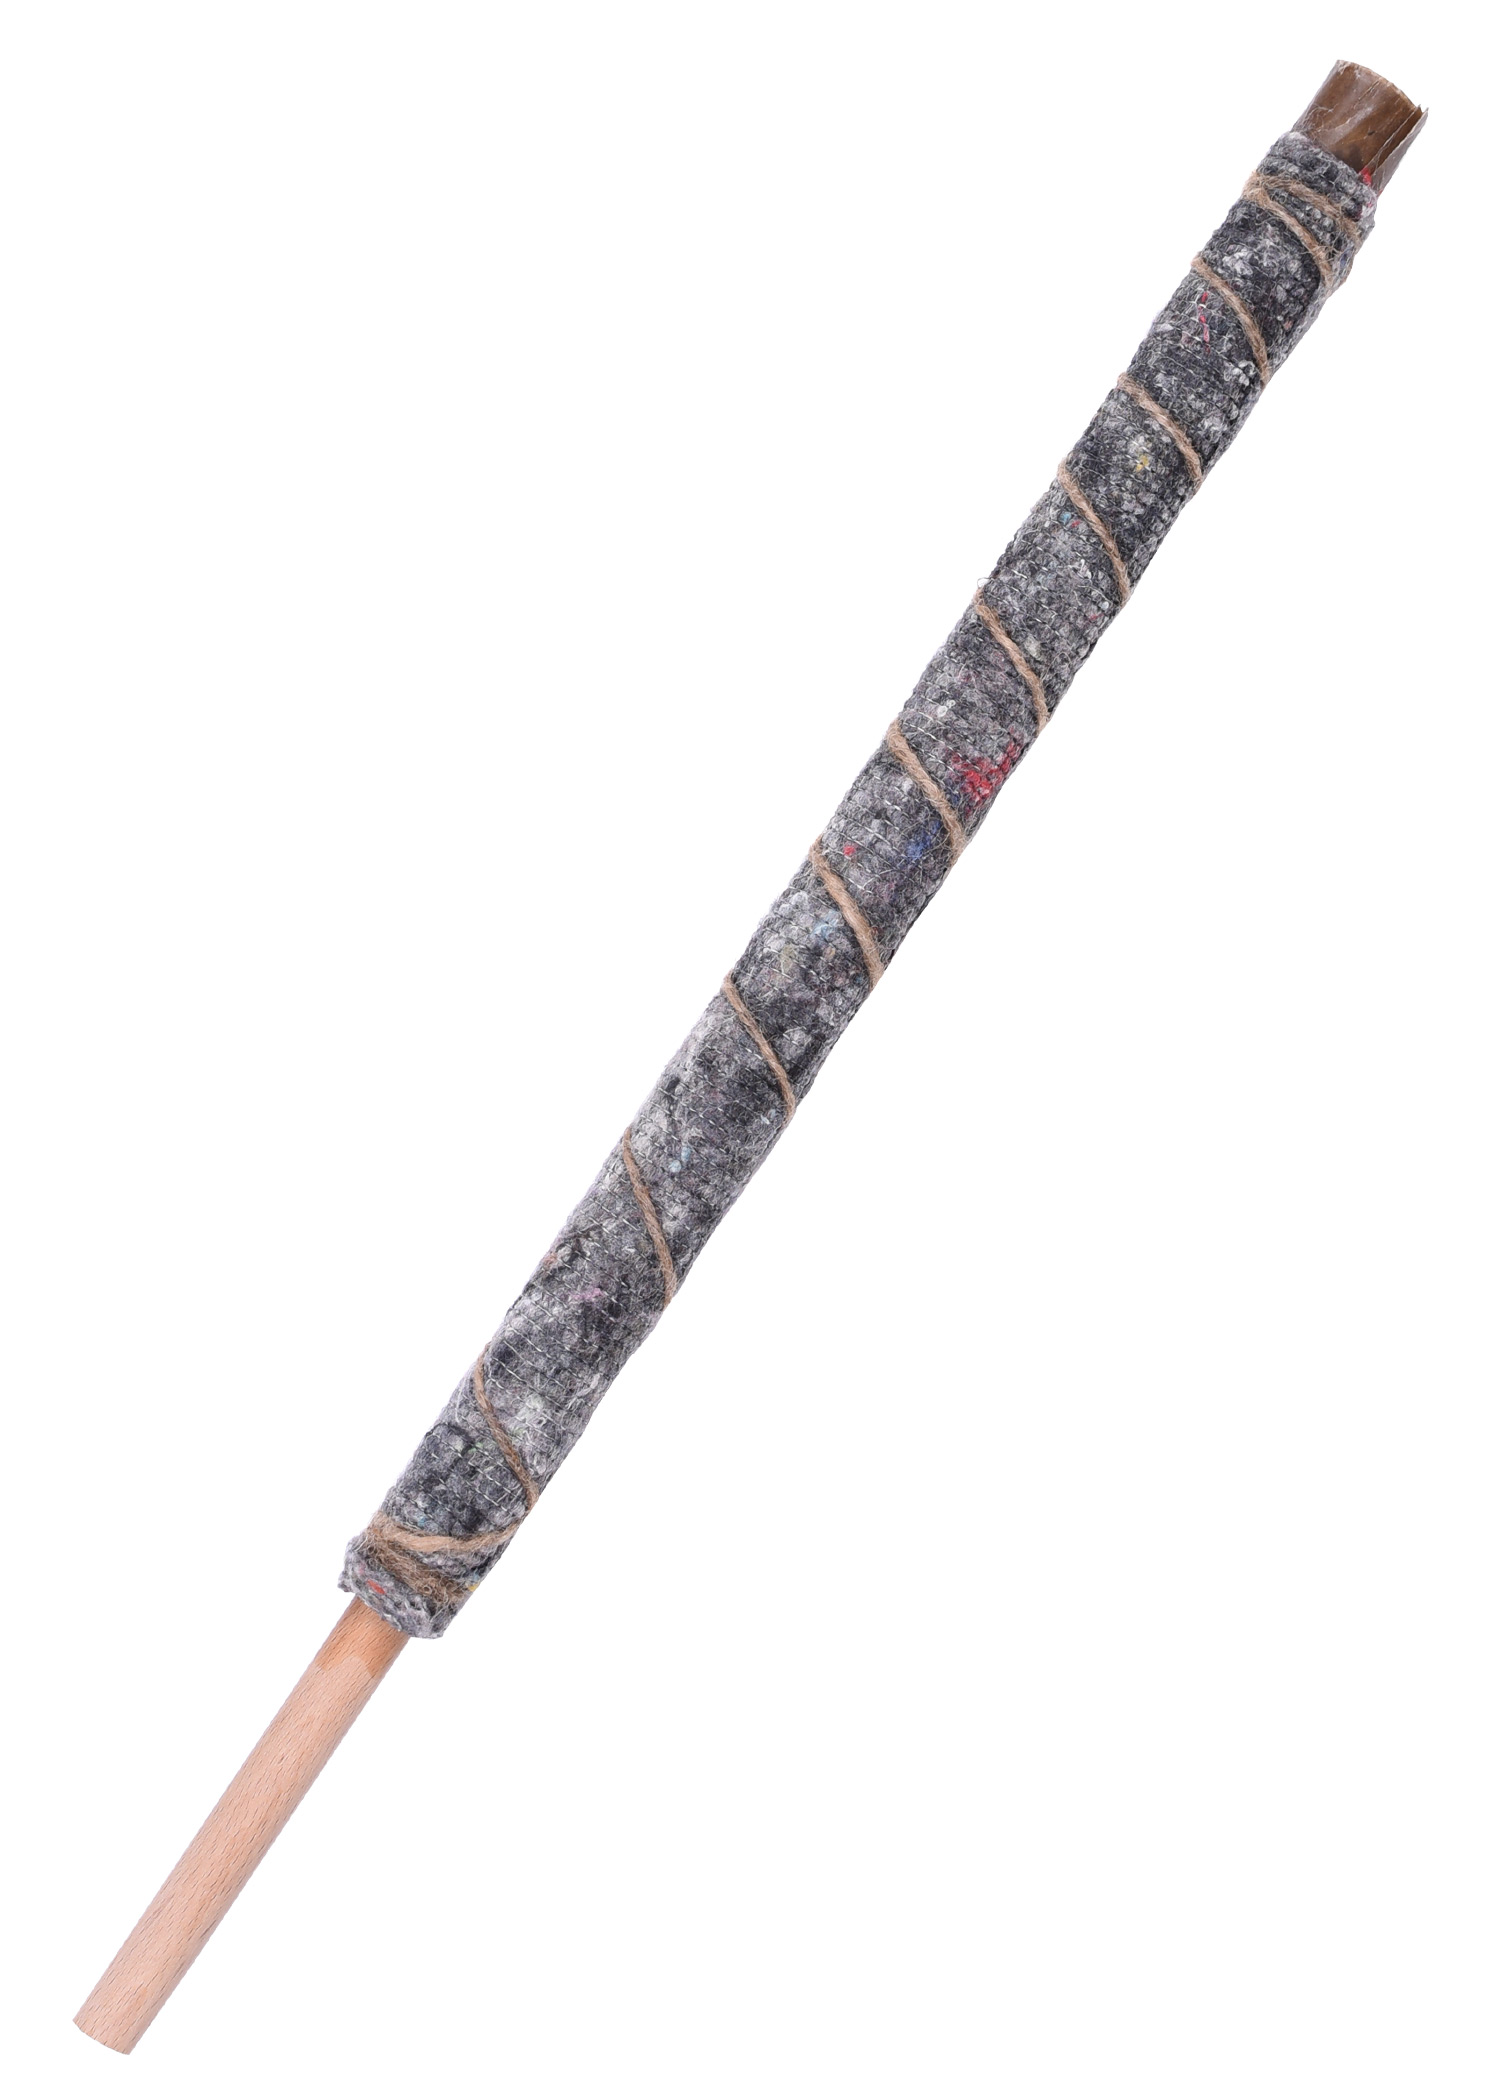 Wachsfackel aus hochwertigem Fackeltuch, 40 cm, Menge 25